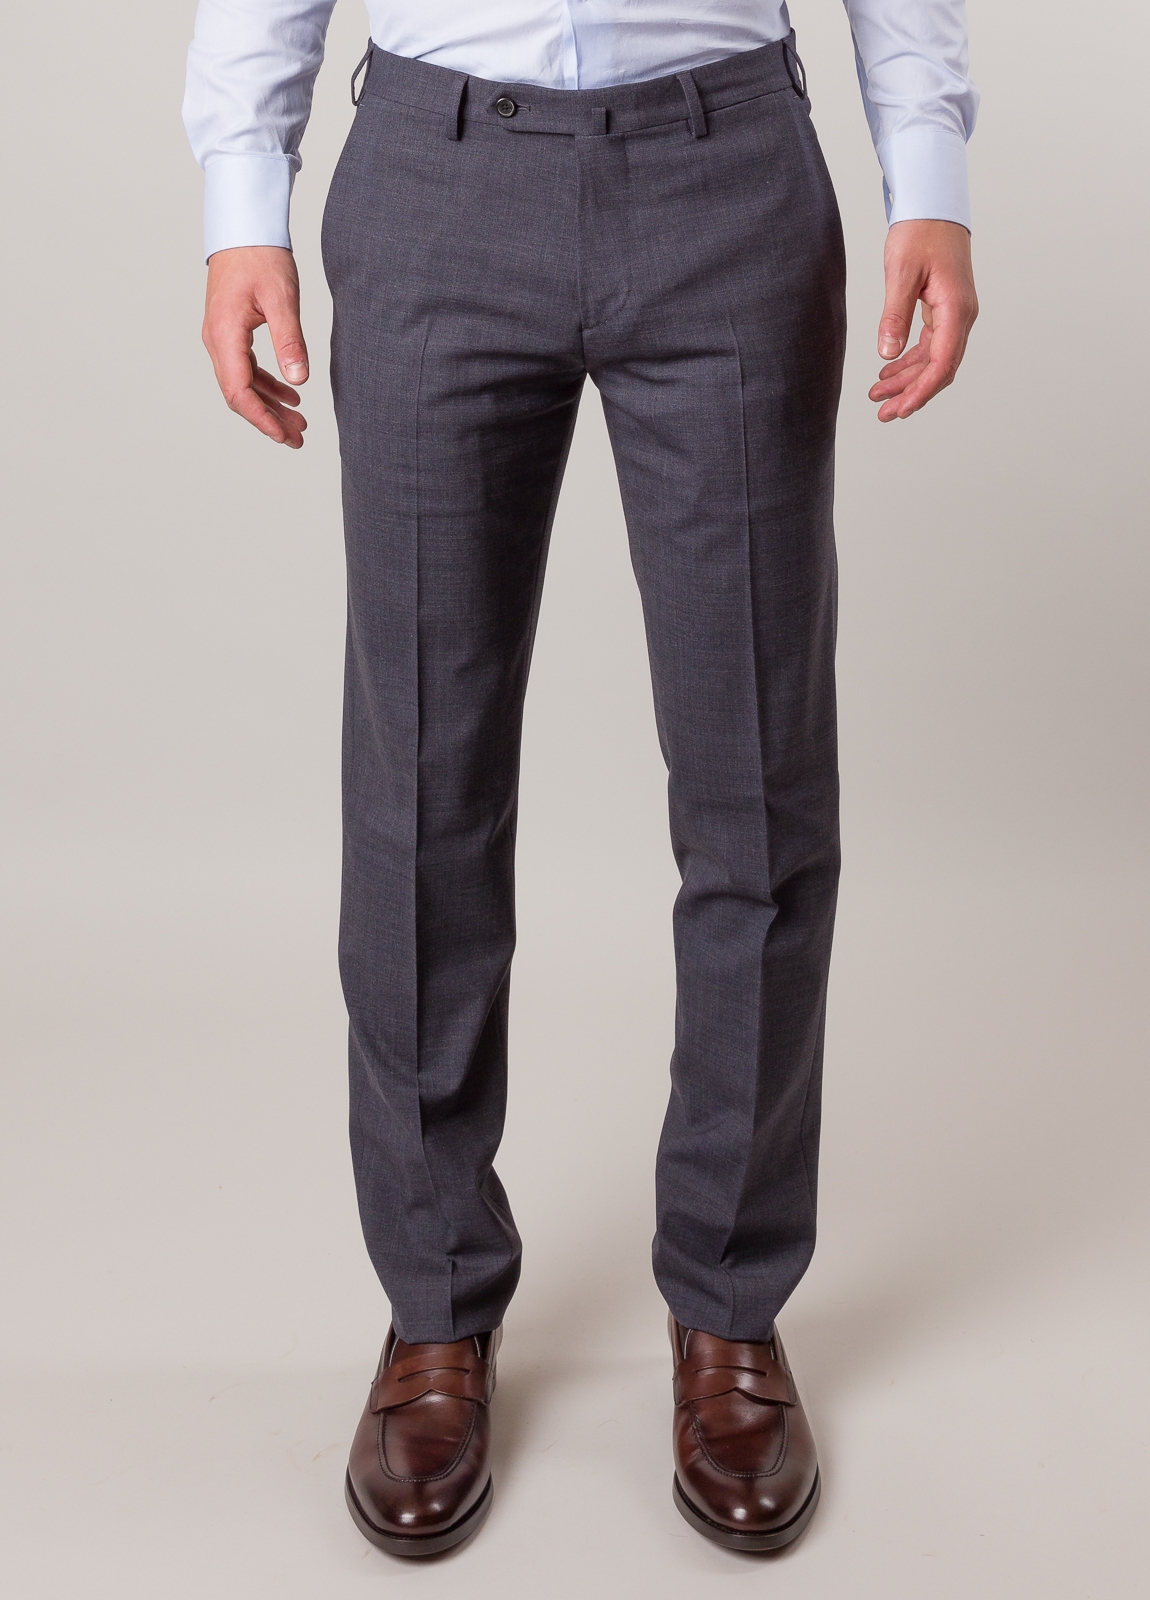 Pantalón vestir FUREST COLECCION color gris - Ítem1